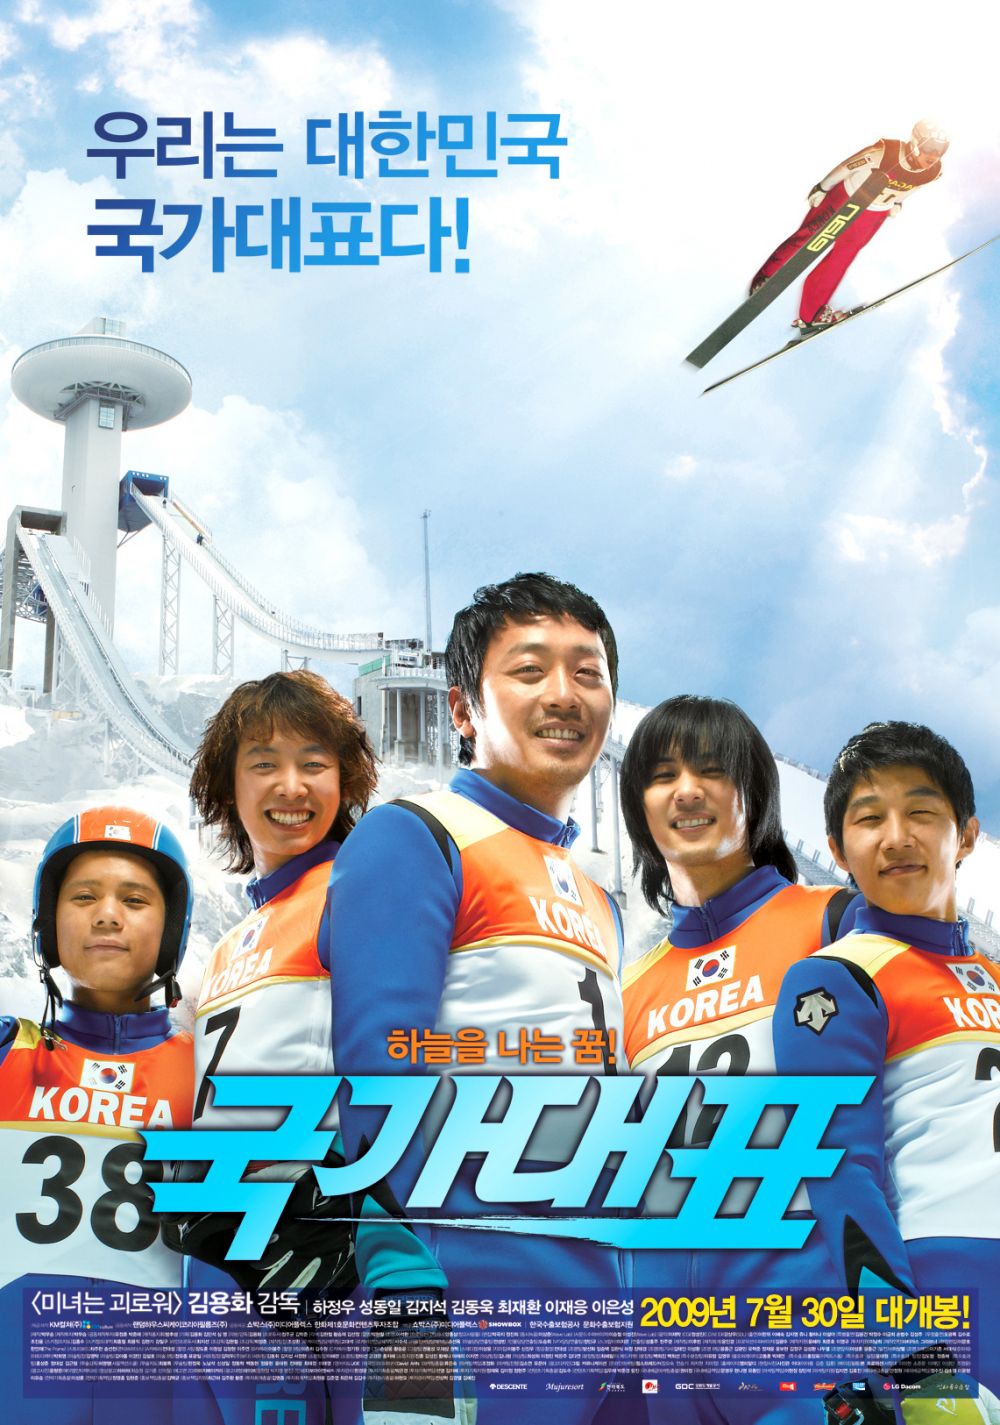 11 Rekomendasi film Korea tentang dunia olahraga, penuh kompetisi